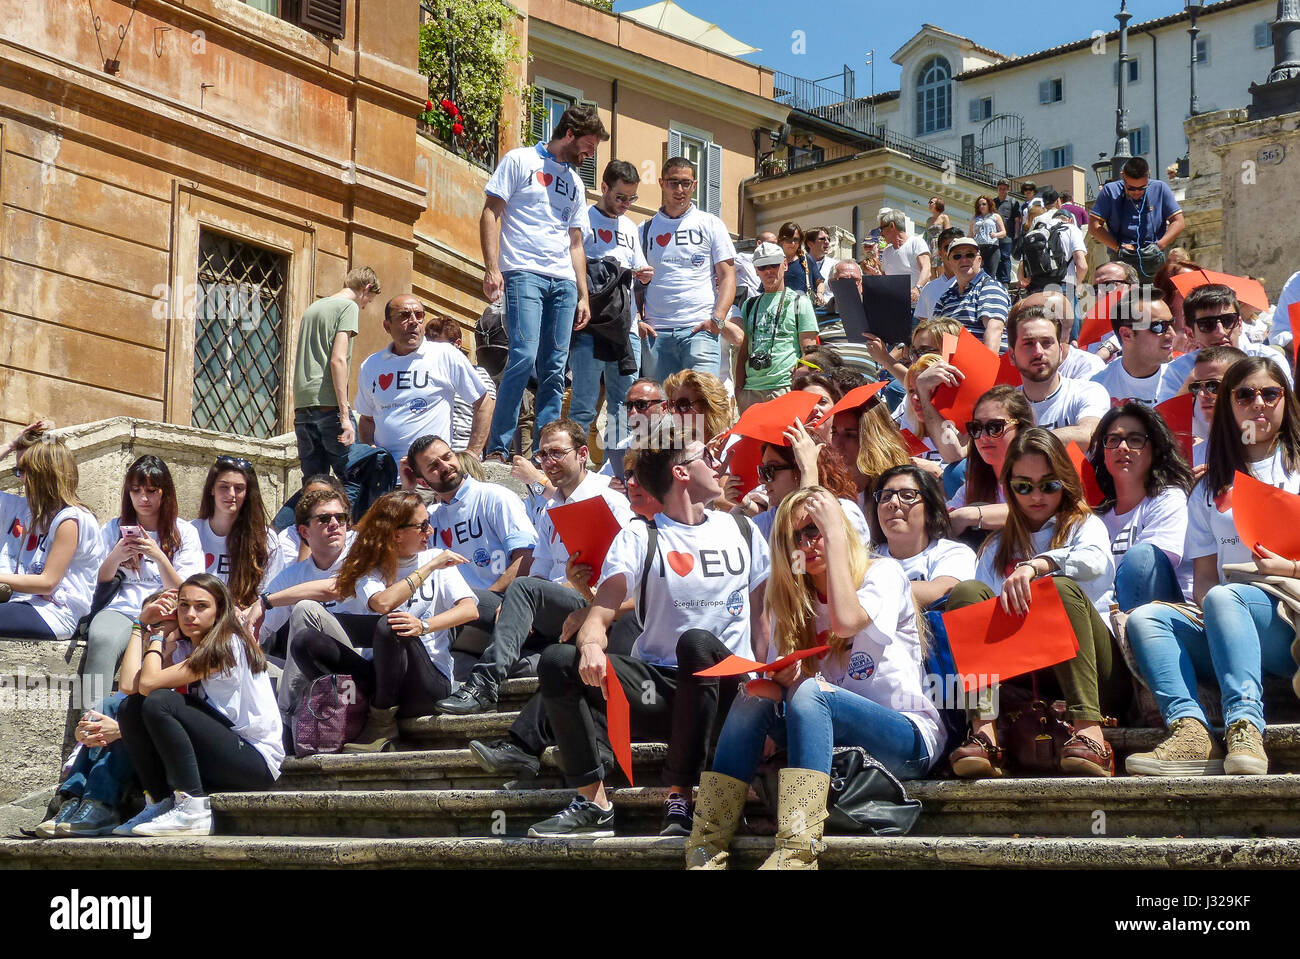 Rome, 9 mai 2014 - Flash mob i love EU . Ministre Stefania Giannini sur les marches de la Piazza di Spagna avec des dizaines d'enfants pour célébrer l'Europe Banque D'Images